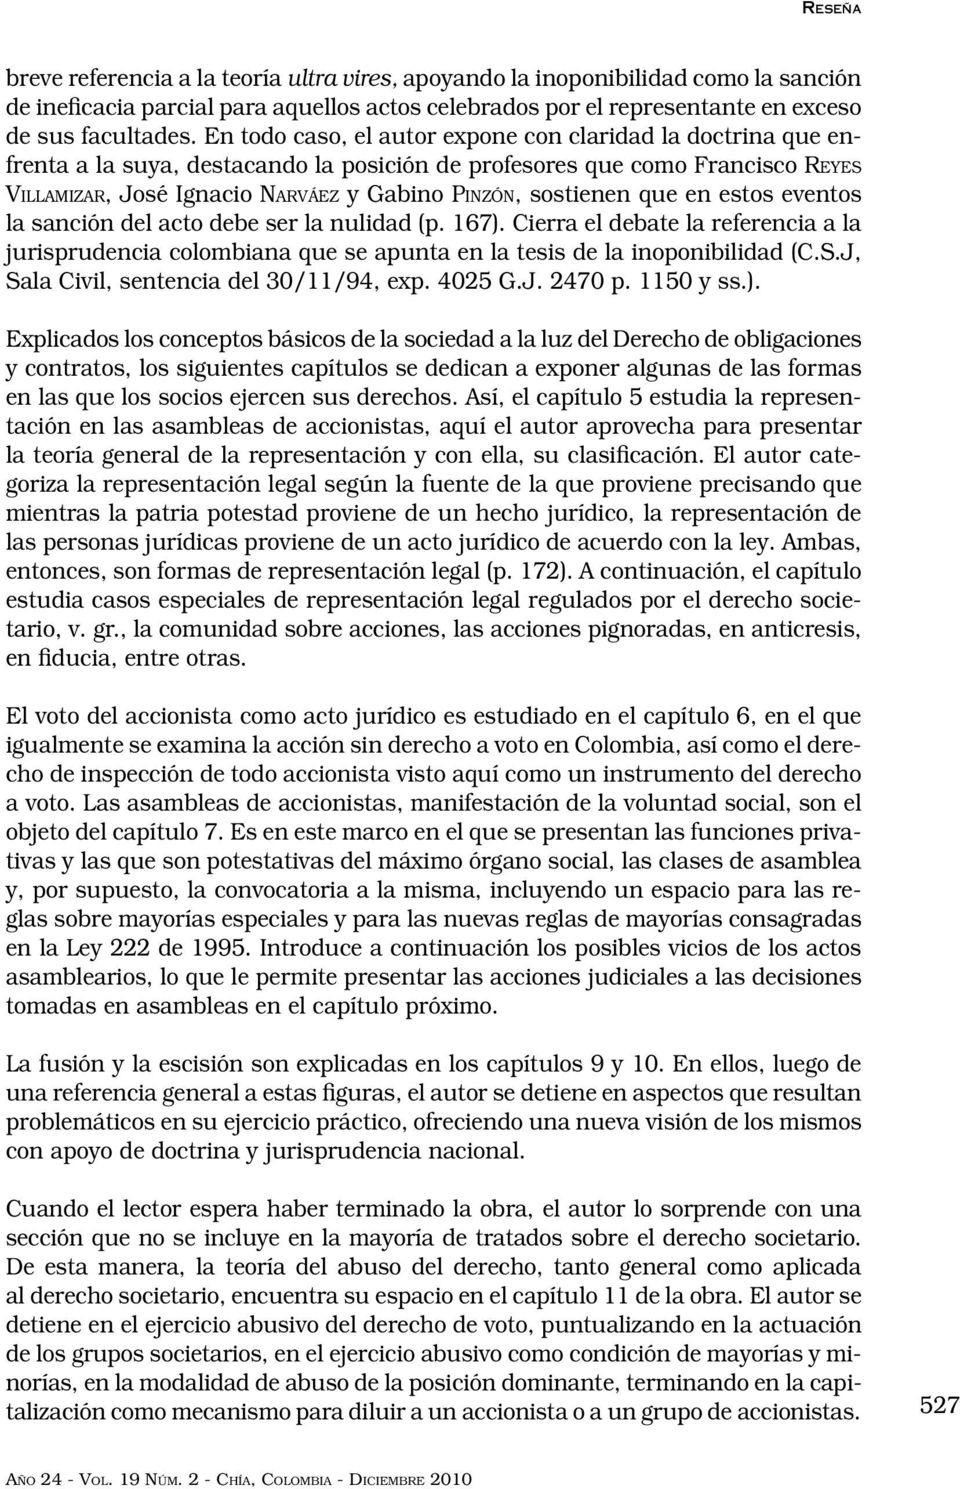 sostienen que en estos eventos la sanción del acto debe ser la nulidad (p. 167). Cierra el debate la referencia a la jurisprudencia colombiana que se apunta en la tesis de la inoponibilidad (C.S.